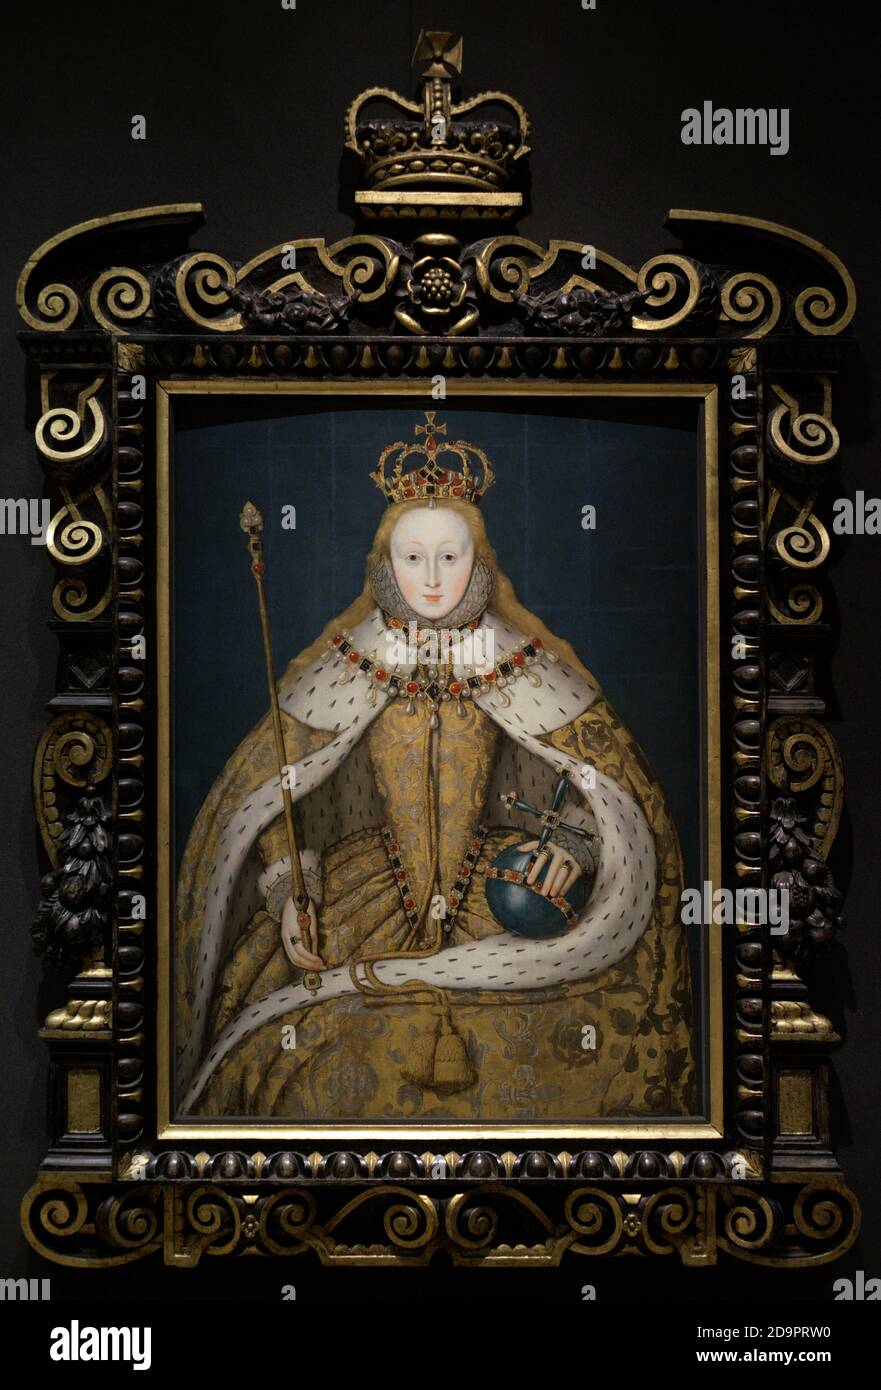 Königin Elisabeth I. von England (1533-1603. Porträt eines unbekannten englischen Künstlers. Dieses Gemälde ist als "das Krönungs-Porträt" bekannt. Elizabeth ist gekrönt dargestellt, trägt das Tuch aus Gold, das sie bei ihrer Krönung am 15. Januar 1559 trug. Öl auf Platte, c. 1600. National Portrait Gallery. London, England, Vereinigtes Königreich. Stockfoto